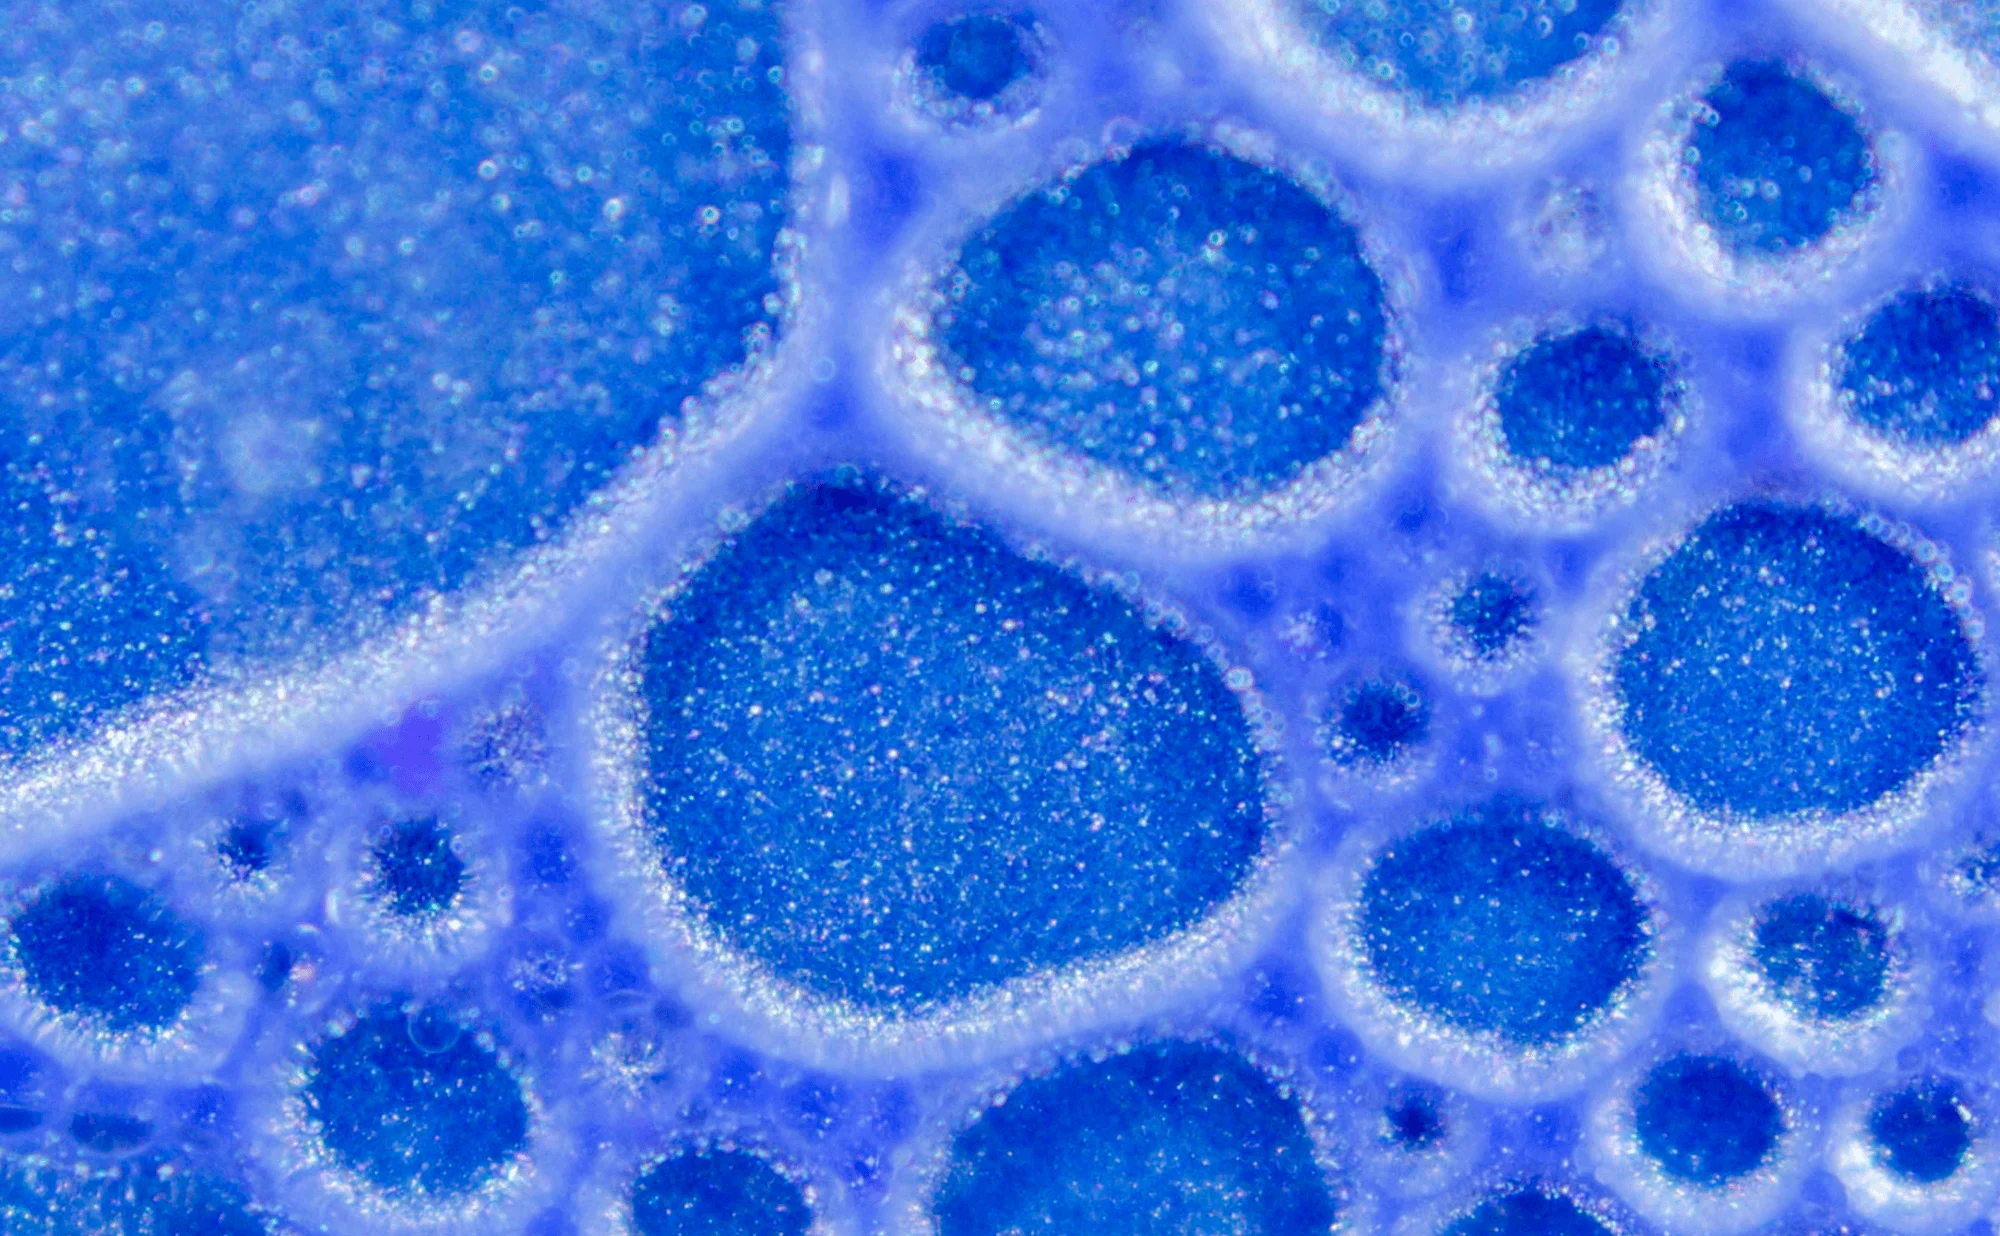 Maillage de gouttelettes transparentes dans un environnement de pigment bleu-violet. Photographie, Microfluidic poetry | Julien Ridouard, en collaboration avec Elveflow